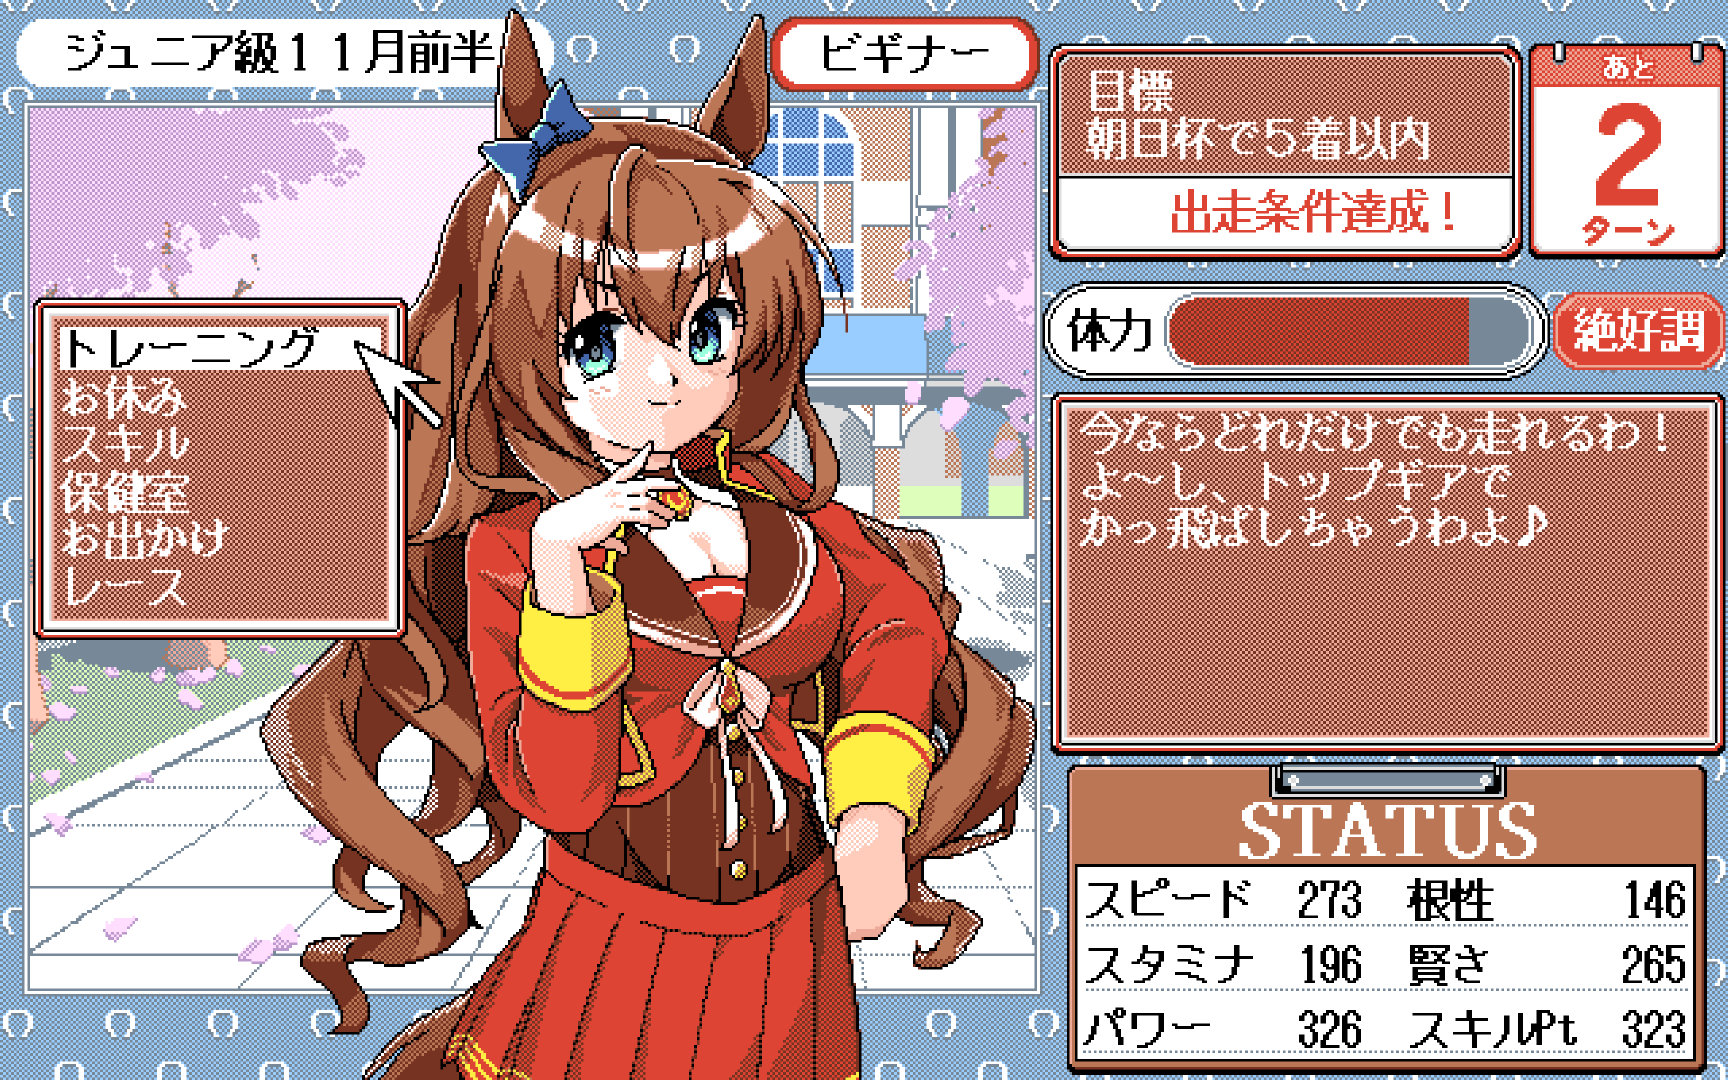 日本插画师ちぷしし在官推宣布自己正在开发一款PC-9800风格的绅士向美少女游戏《同居人》。

本作是对NEC曾经推出的